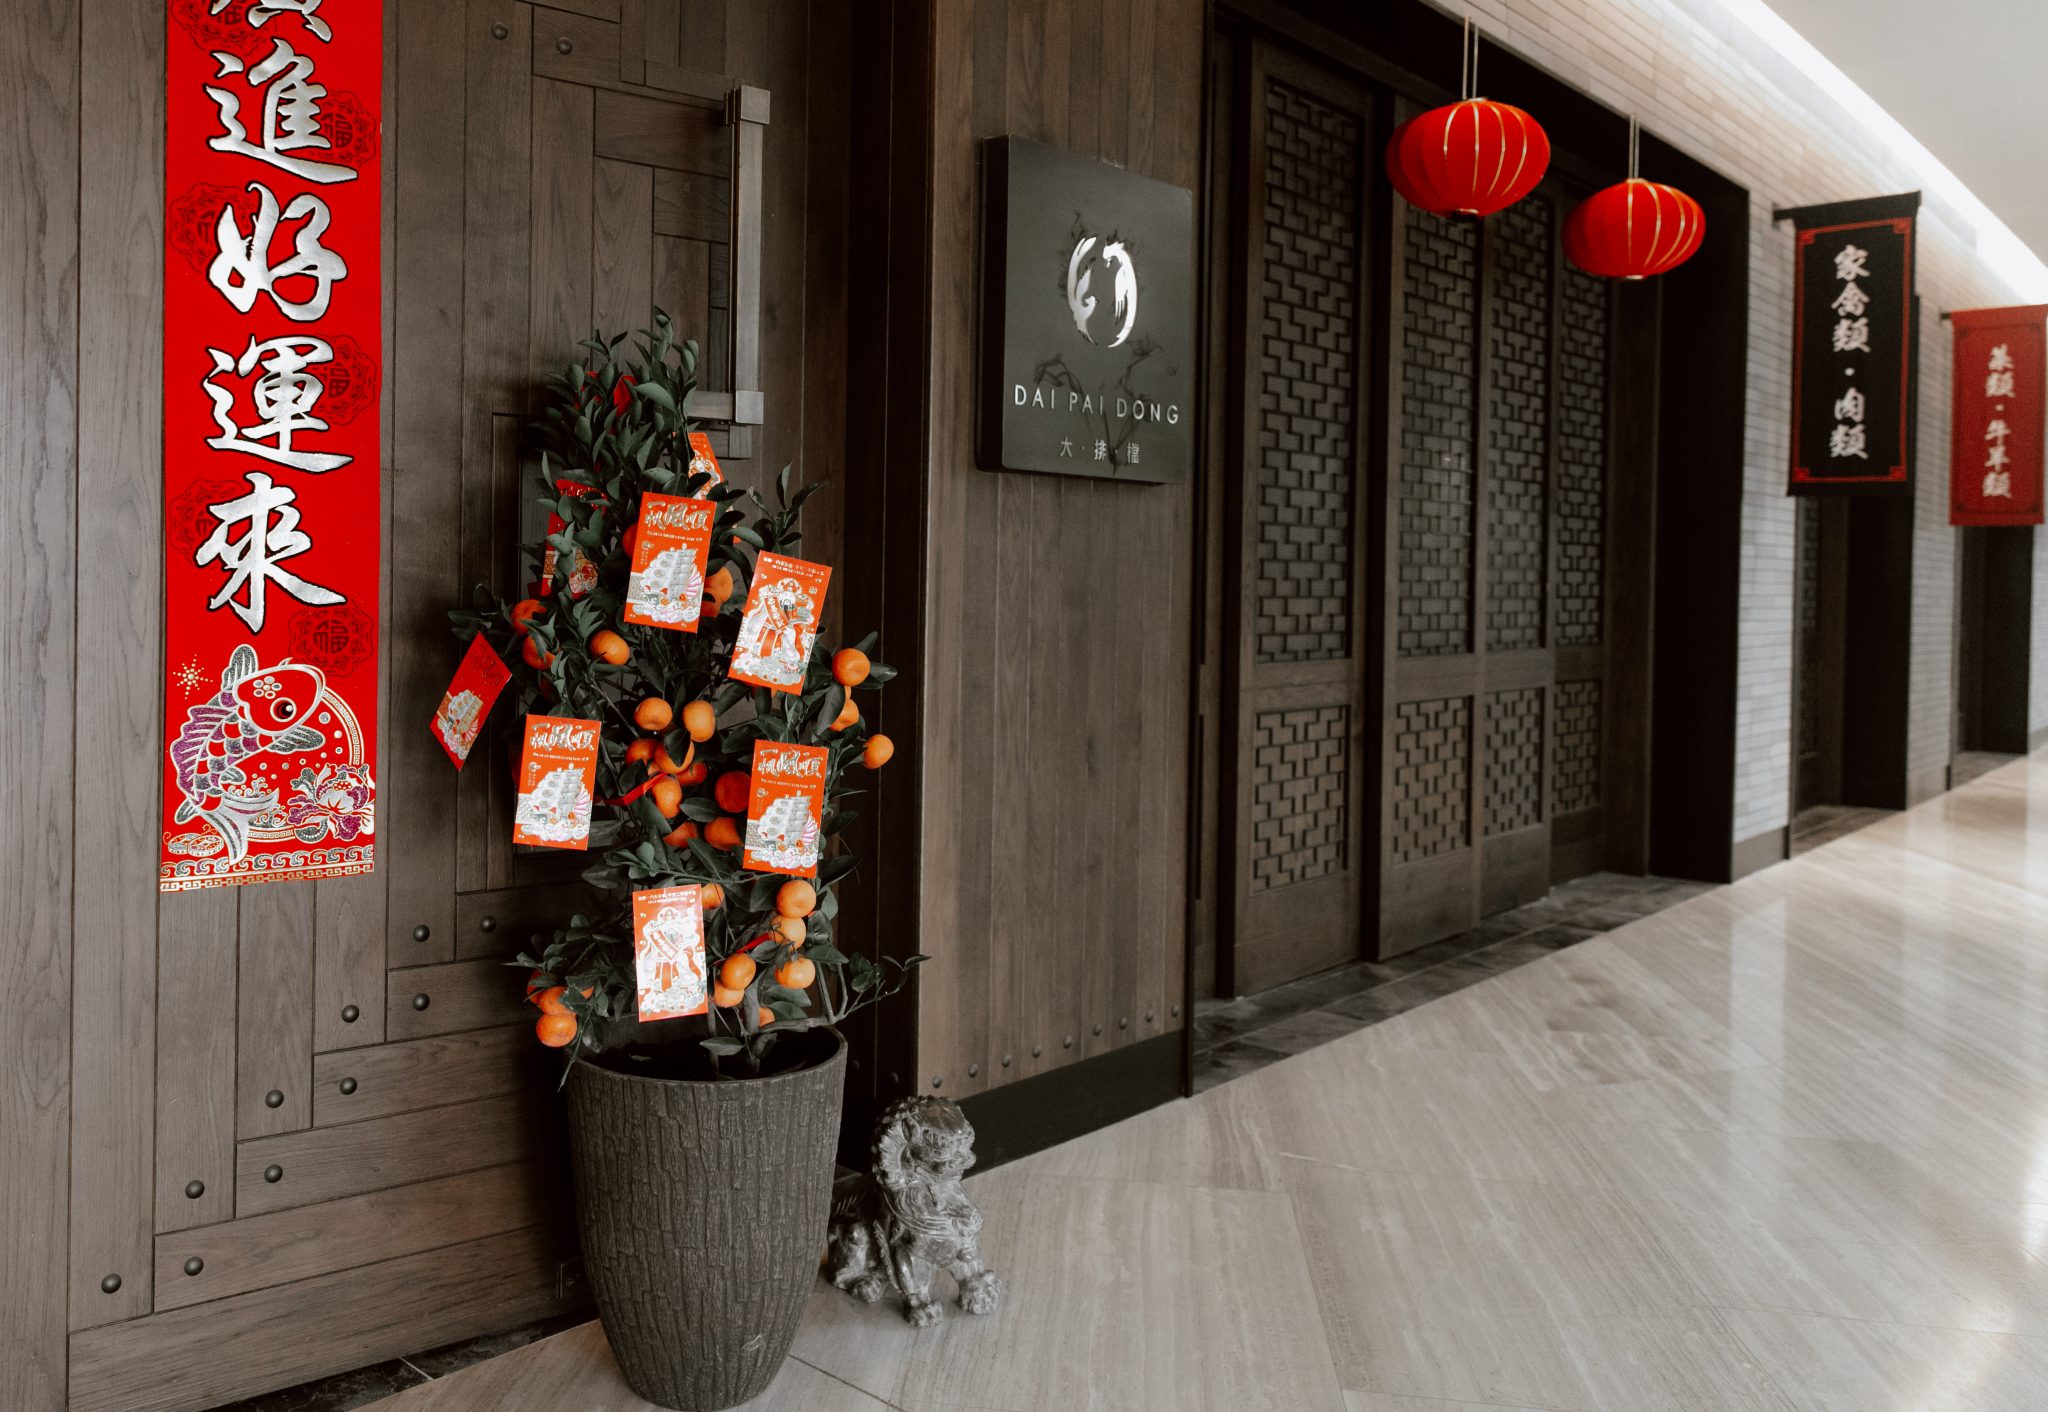 مطعم داي باي دونج أبوظبي يحتفل بعام الفأر الصيني الجديد